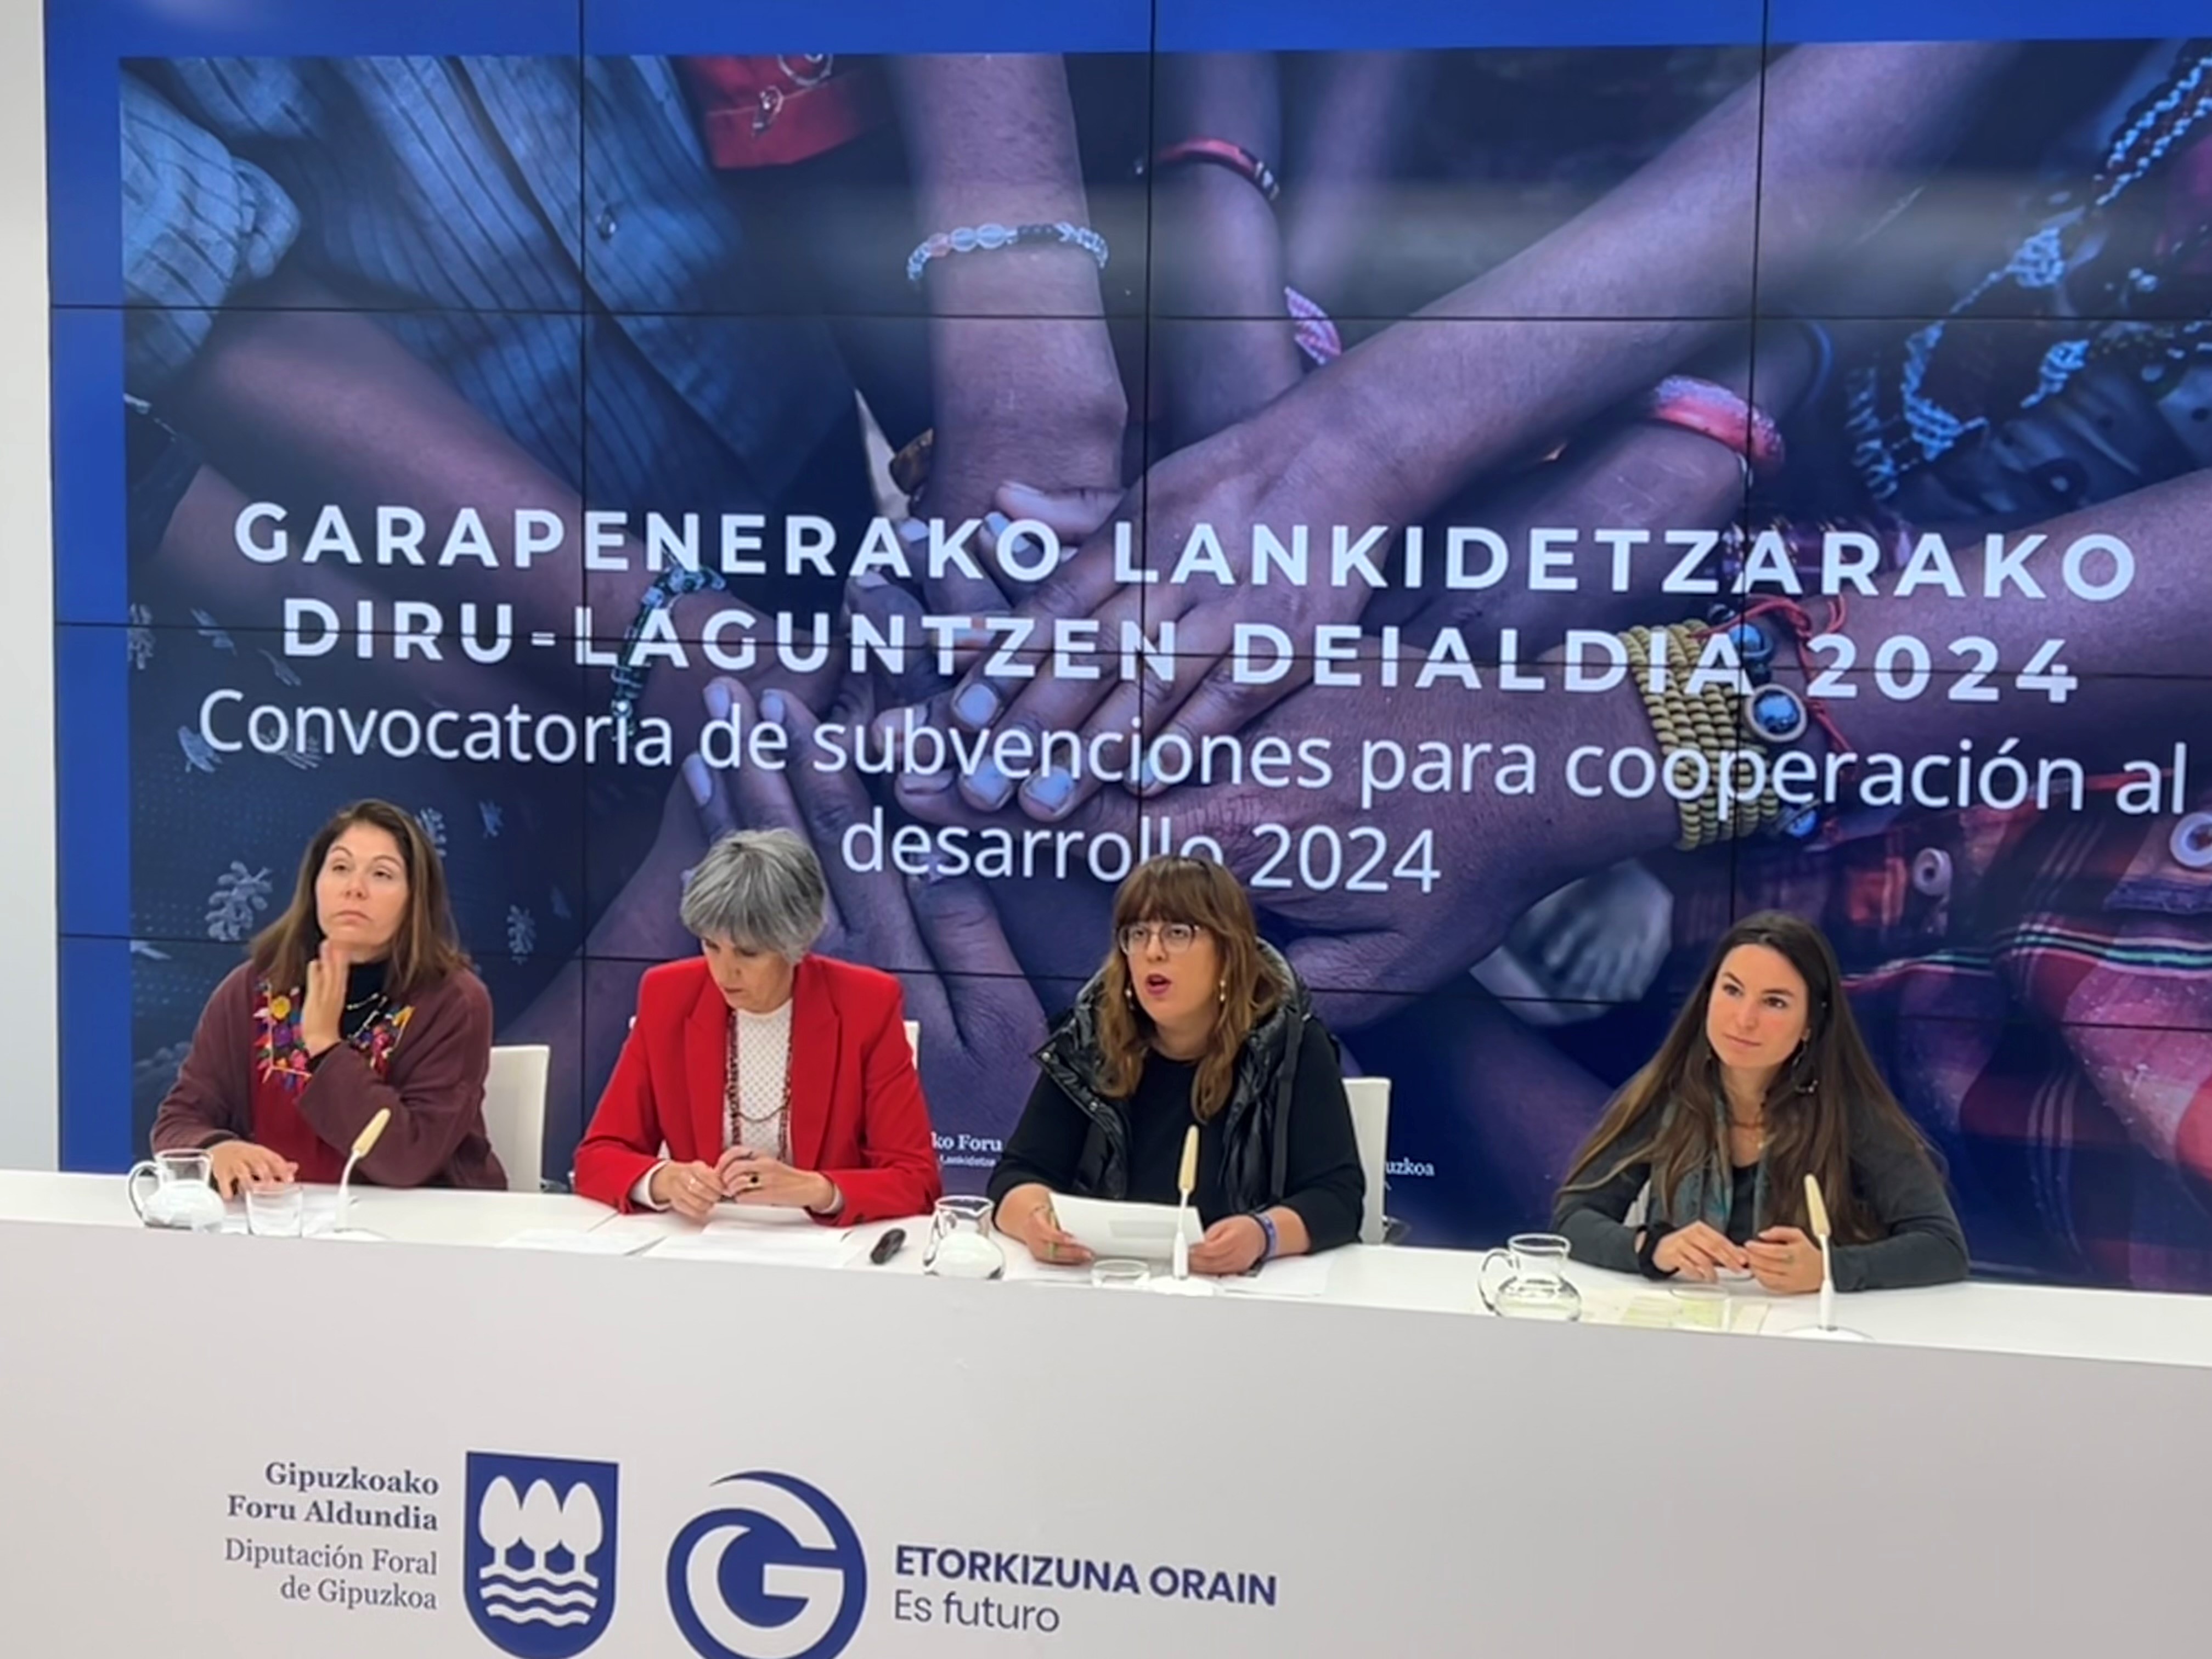 El departamento de Cooperación de la Diputación Foral de Gipuzkoa destinará este año casi 4 millones de euros para ayudas a la cooperación